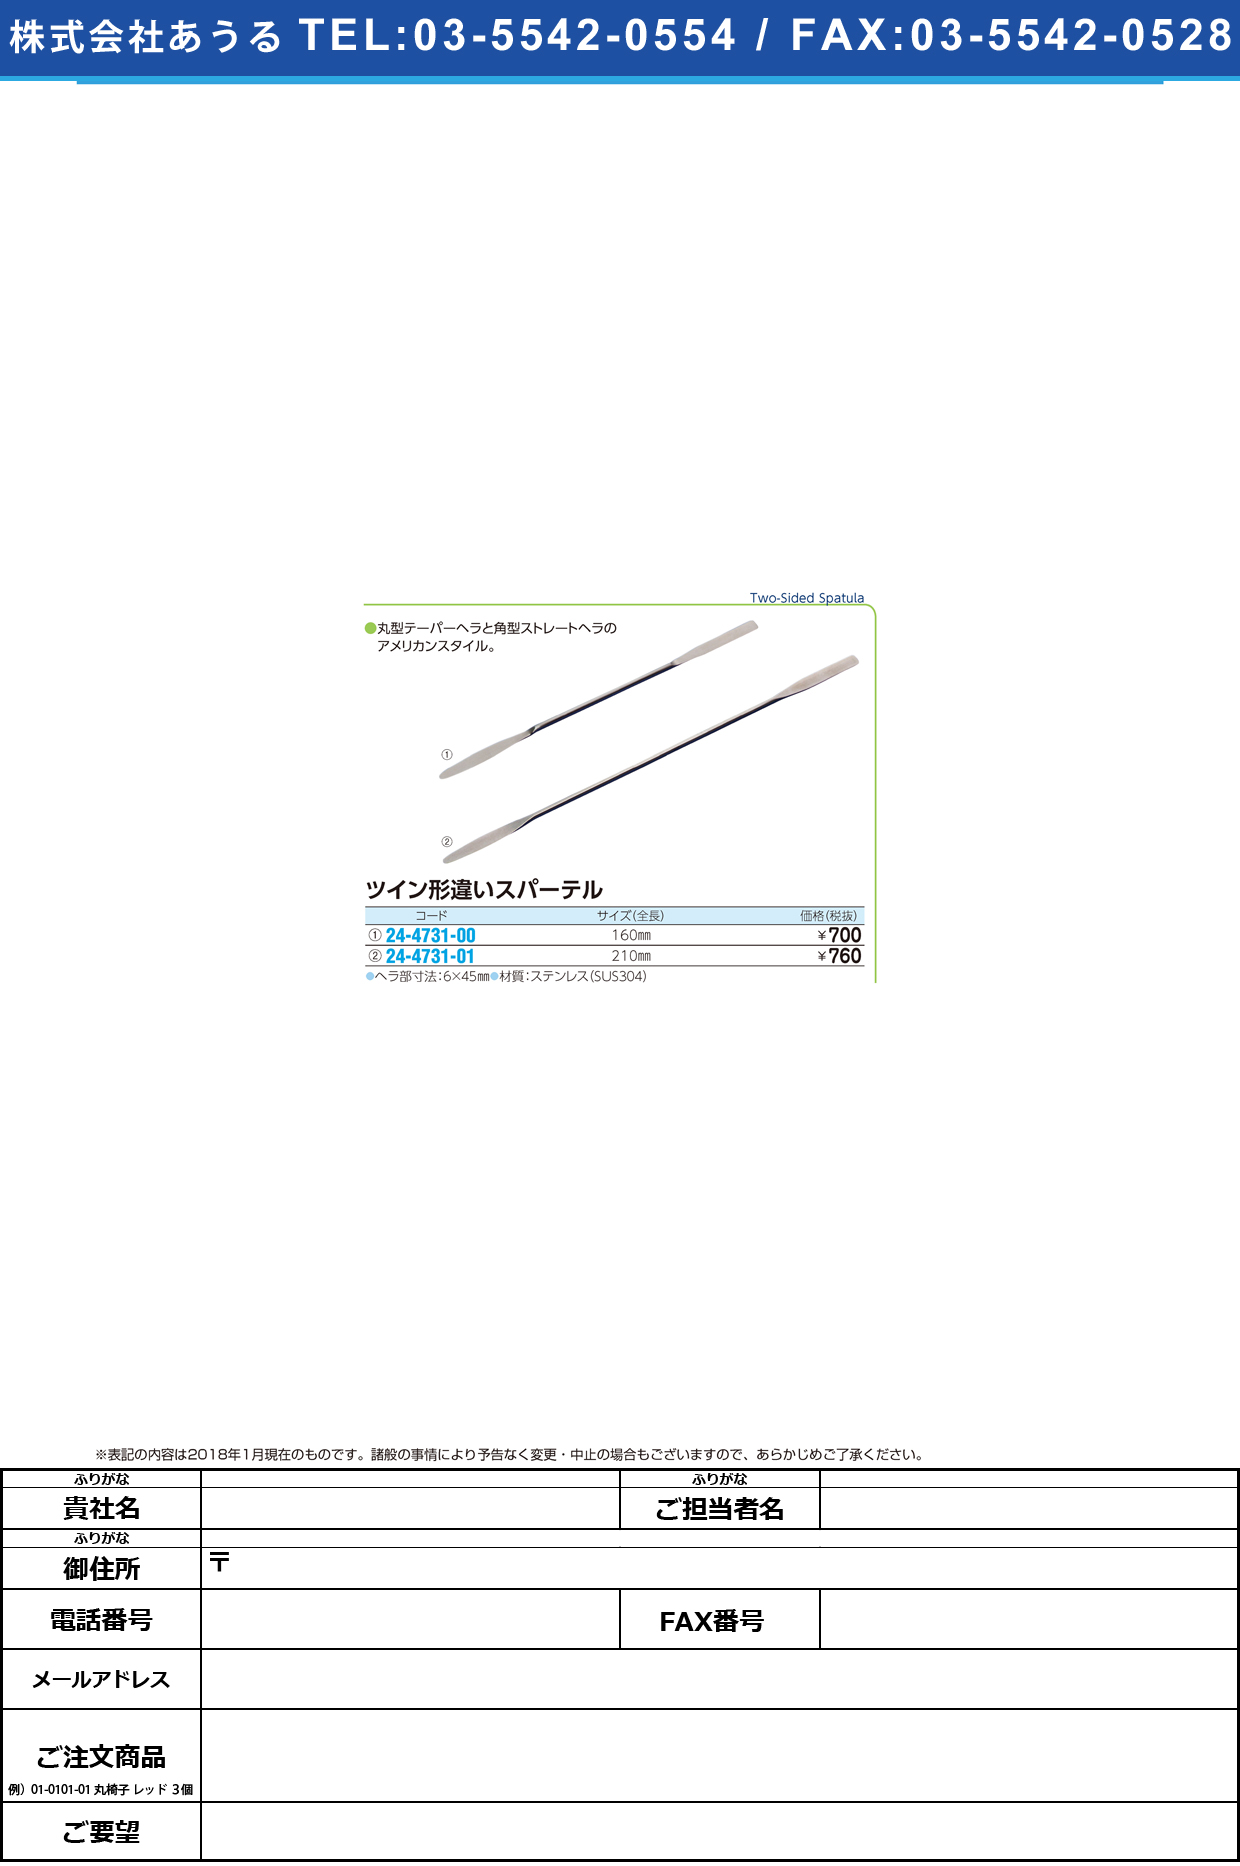 (24-4731-00)ツイン形違いスパーテル HSN41716(160MM) ﾂｲﾝｽﾊﾟｰﾃﾙ【1本単位】【2019年カタログ商品】